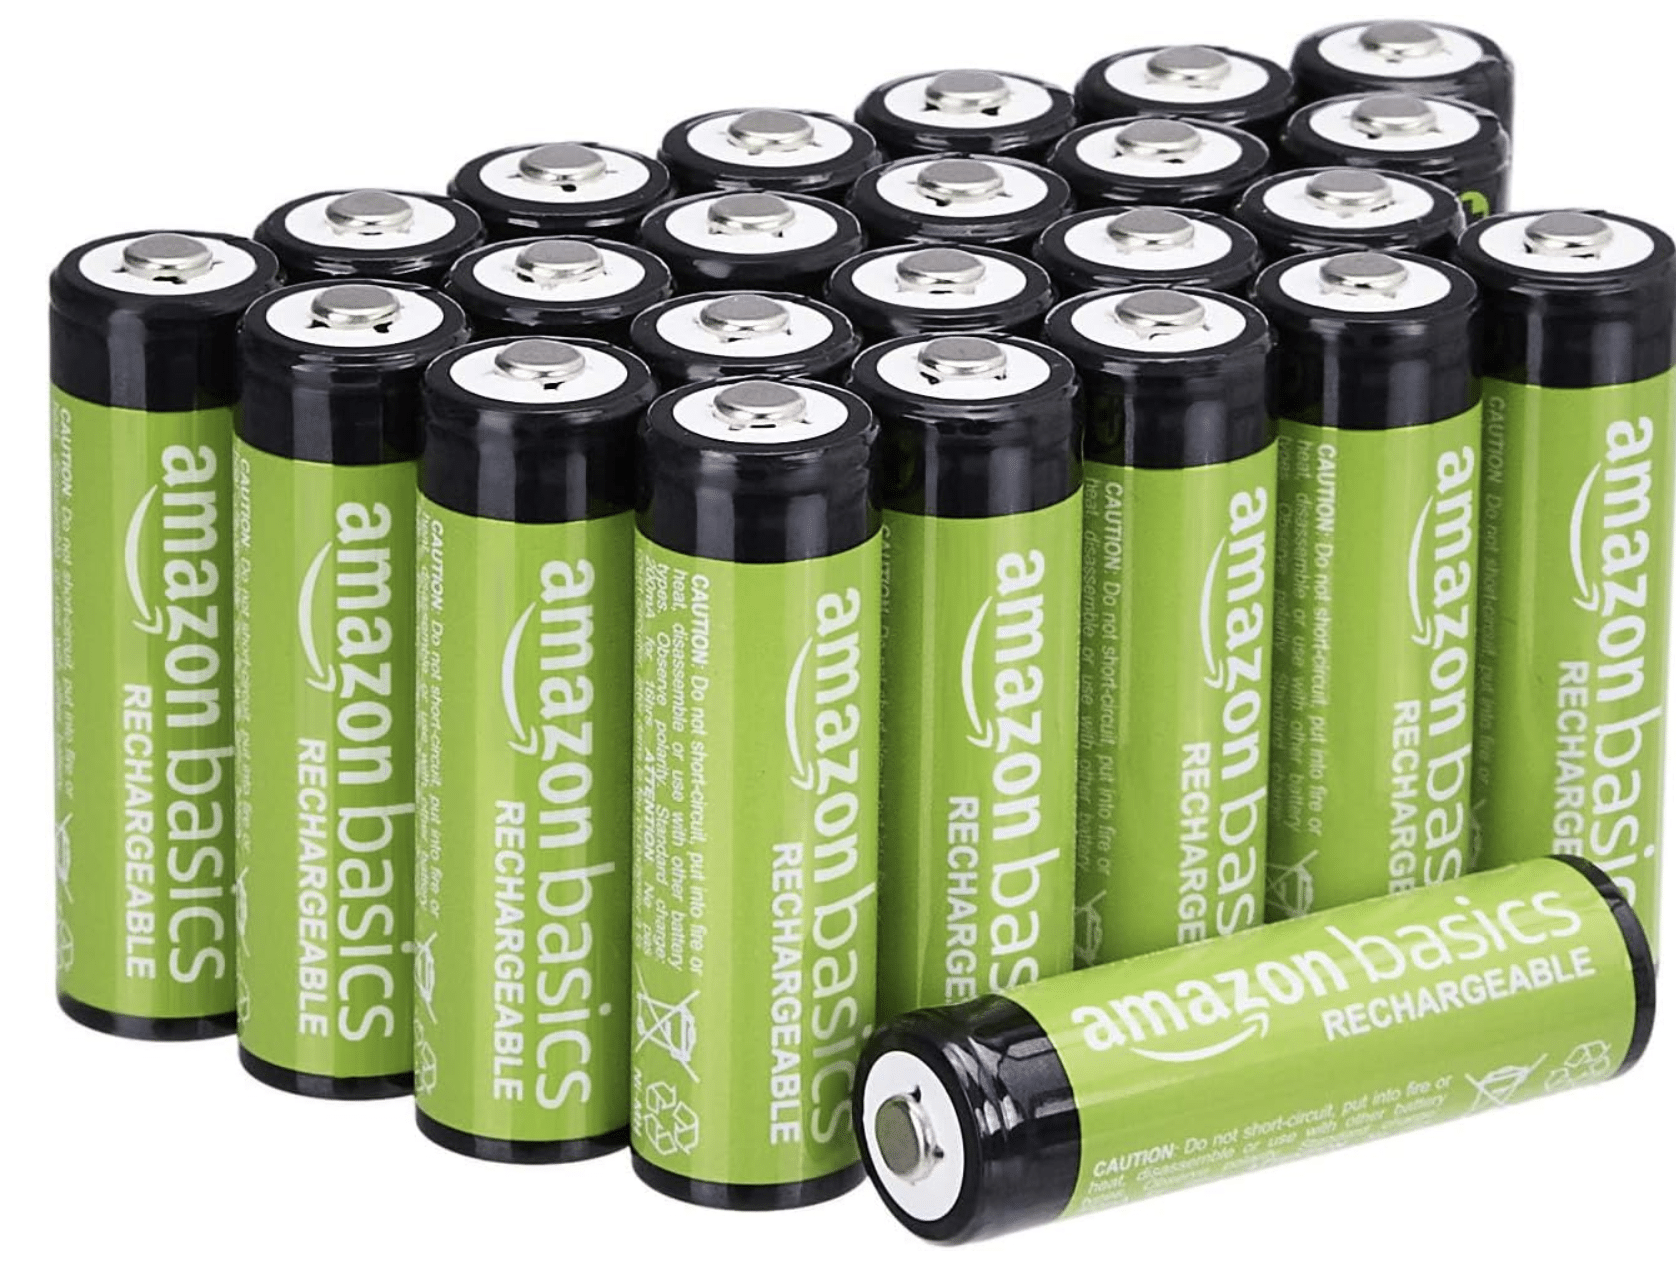 Thumbnail Amazon Basics AA-Batterien, wiederaufladbar, 2000 mAh, vorgeladen, 24 Stück, für 20,41€! 🚀